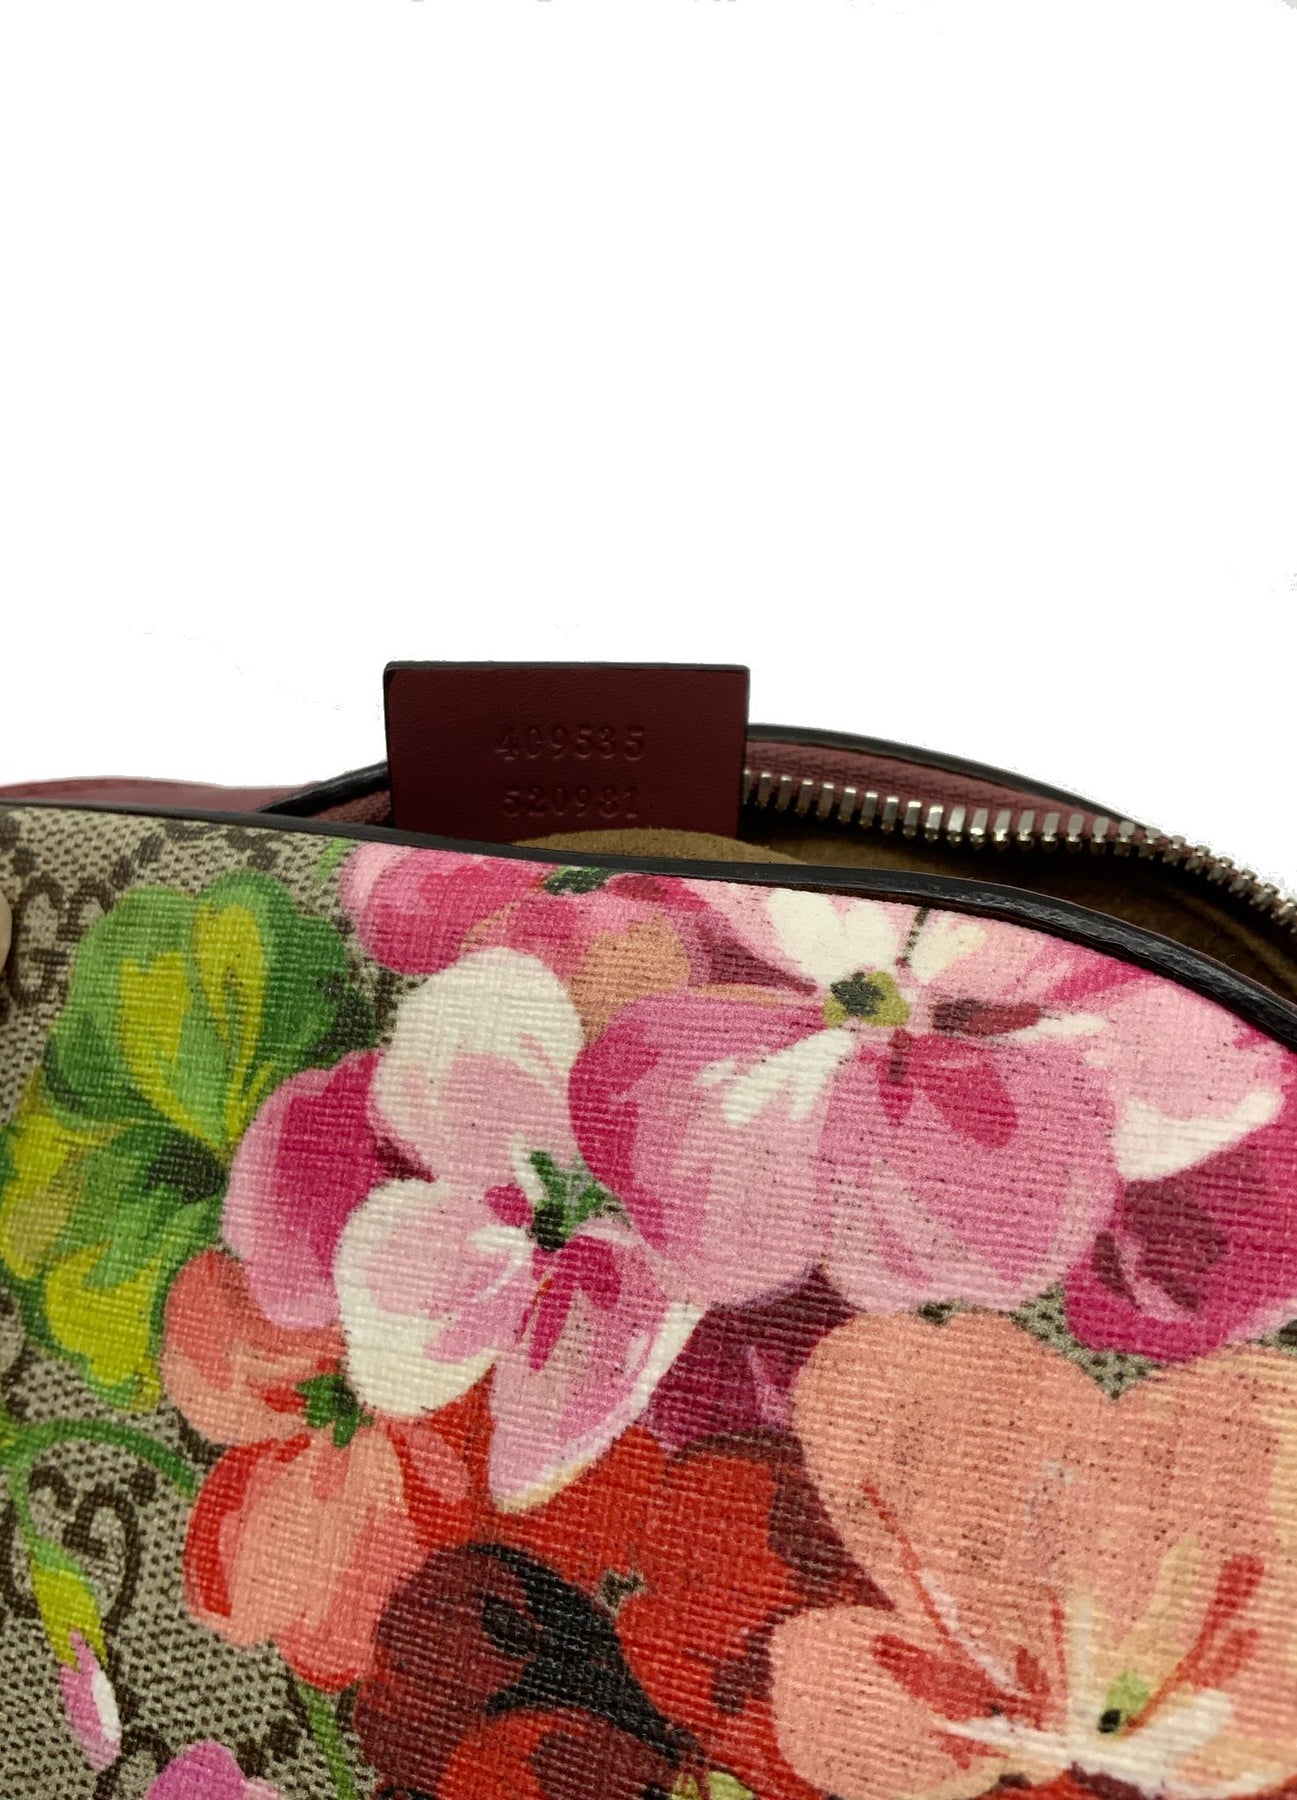 Gucci Blooms GG Supreme Mini Chain Crossbody Bag - Consigned Designs